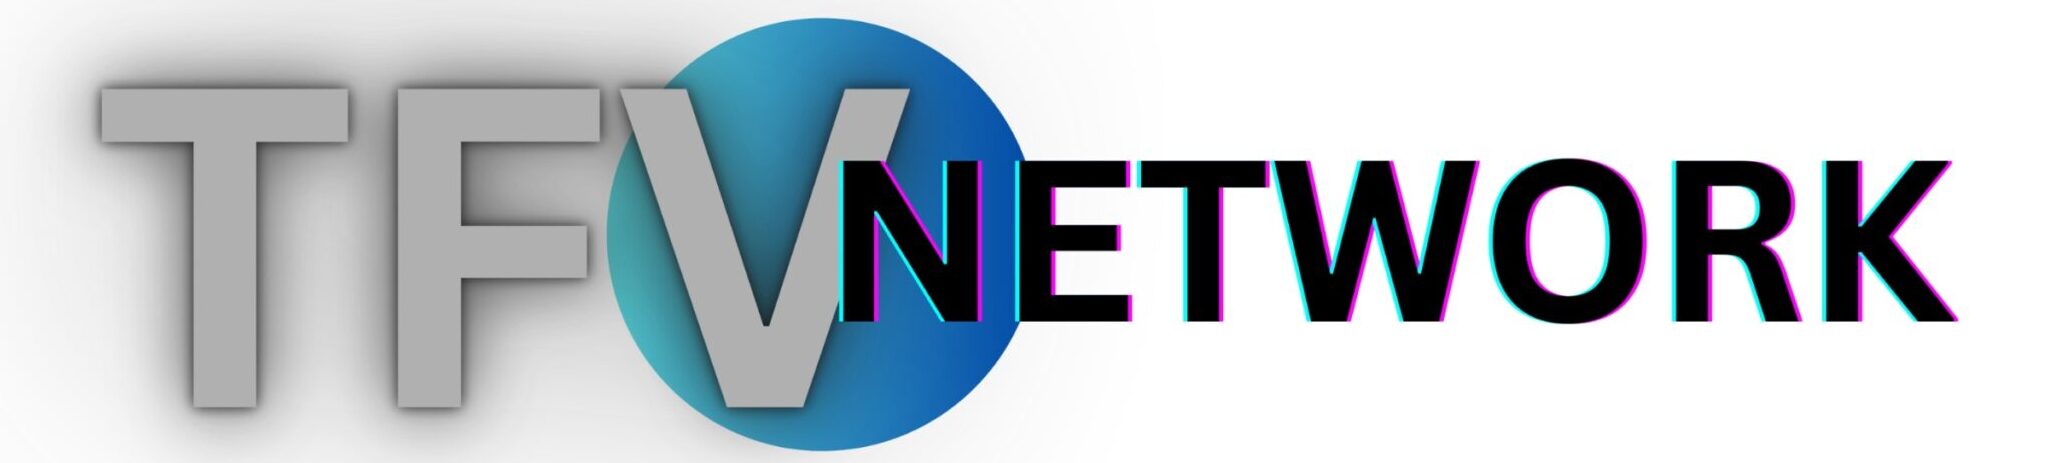 Logo for TFV Network